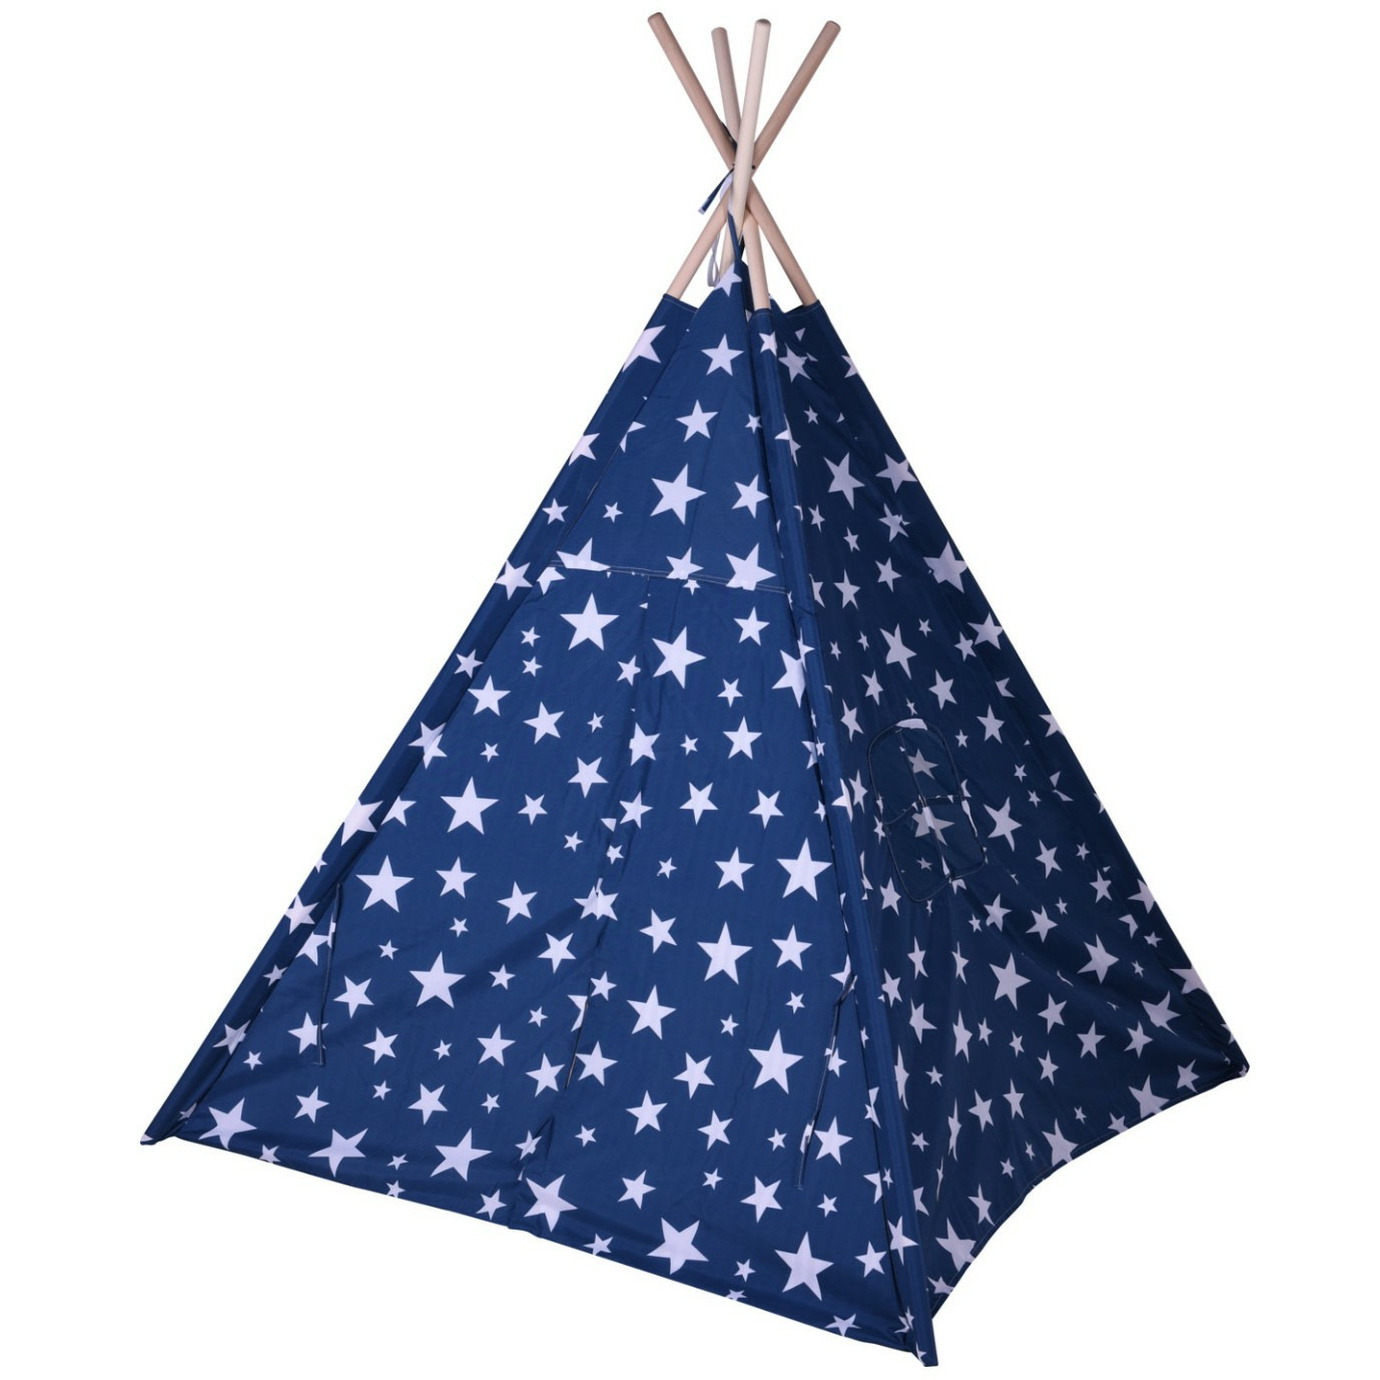 Tipi indianentent voor kinderen 103 x 160 cm blauw-sterren